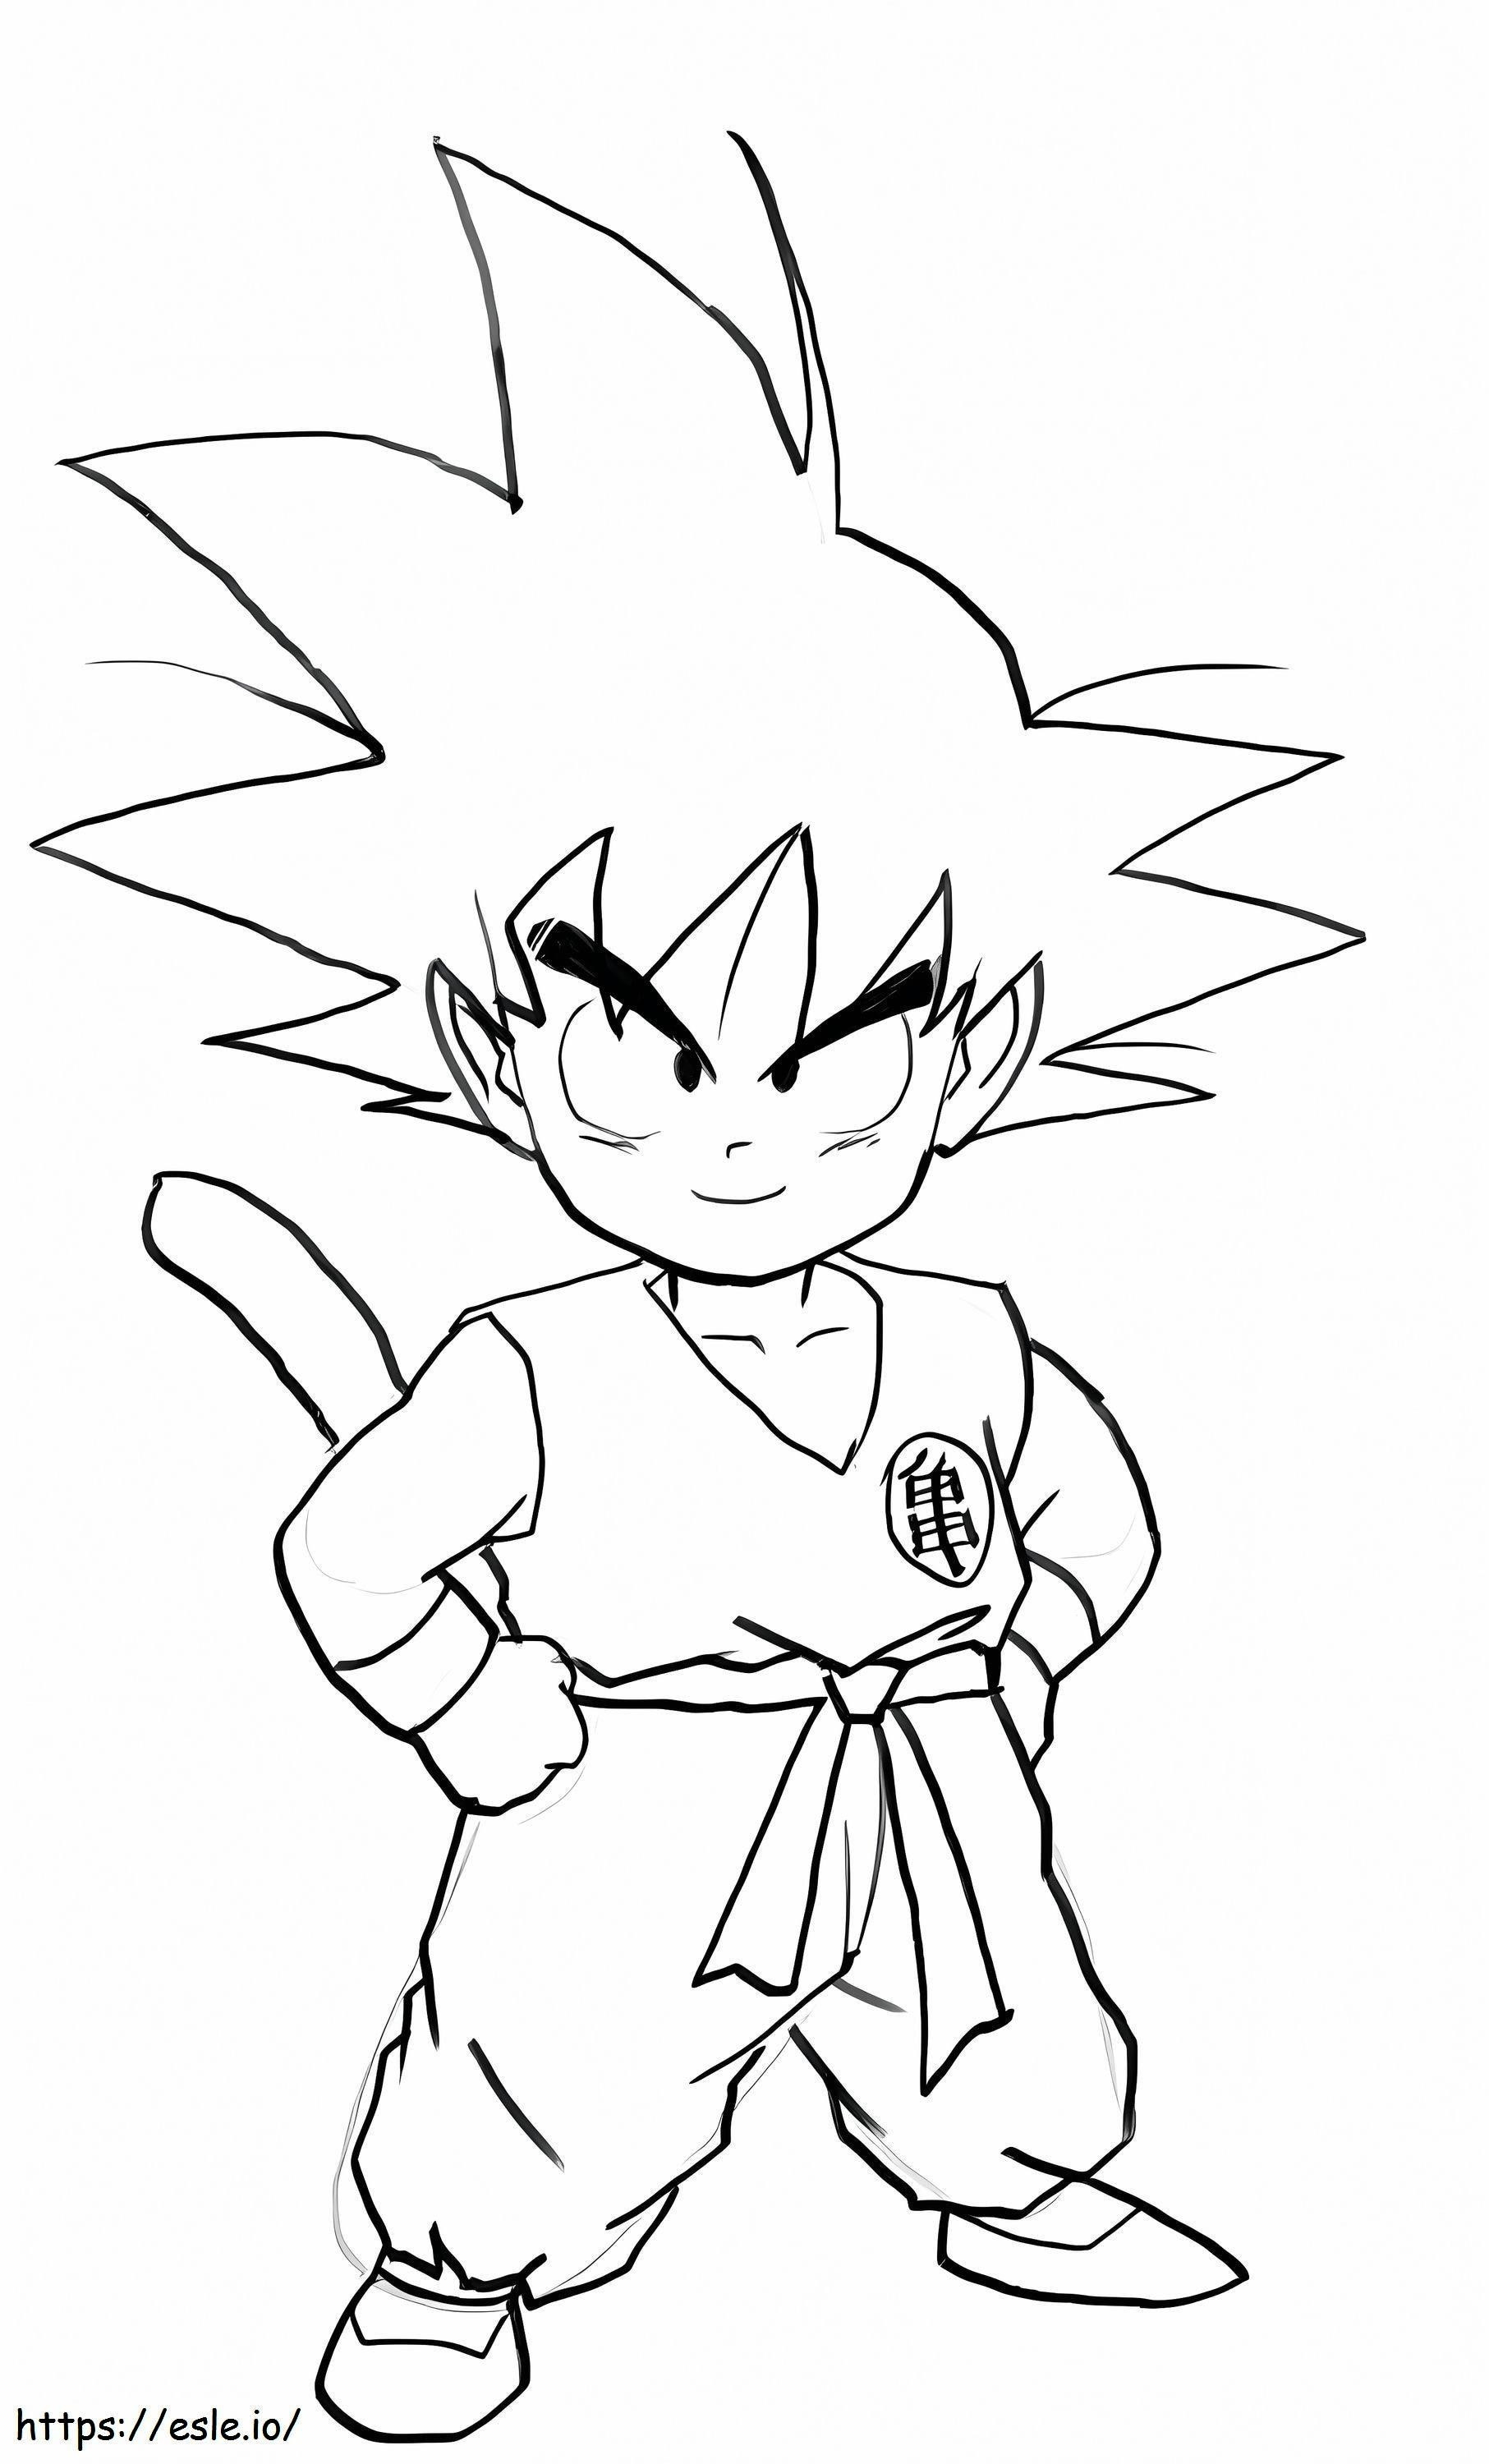 Smiling Boy Goku coloring page